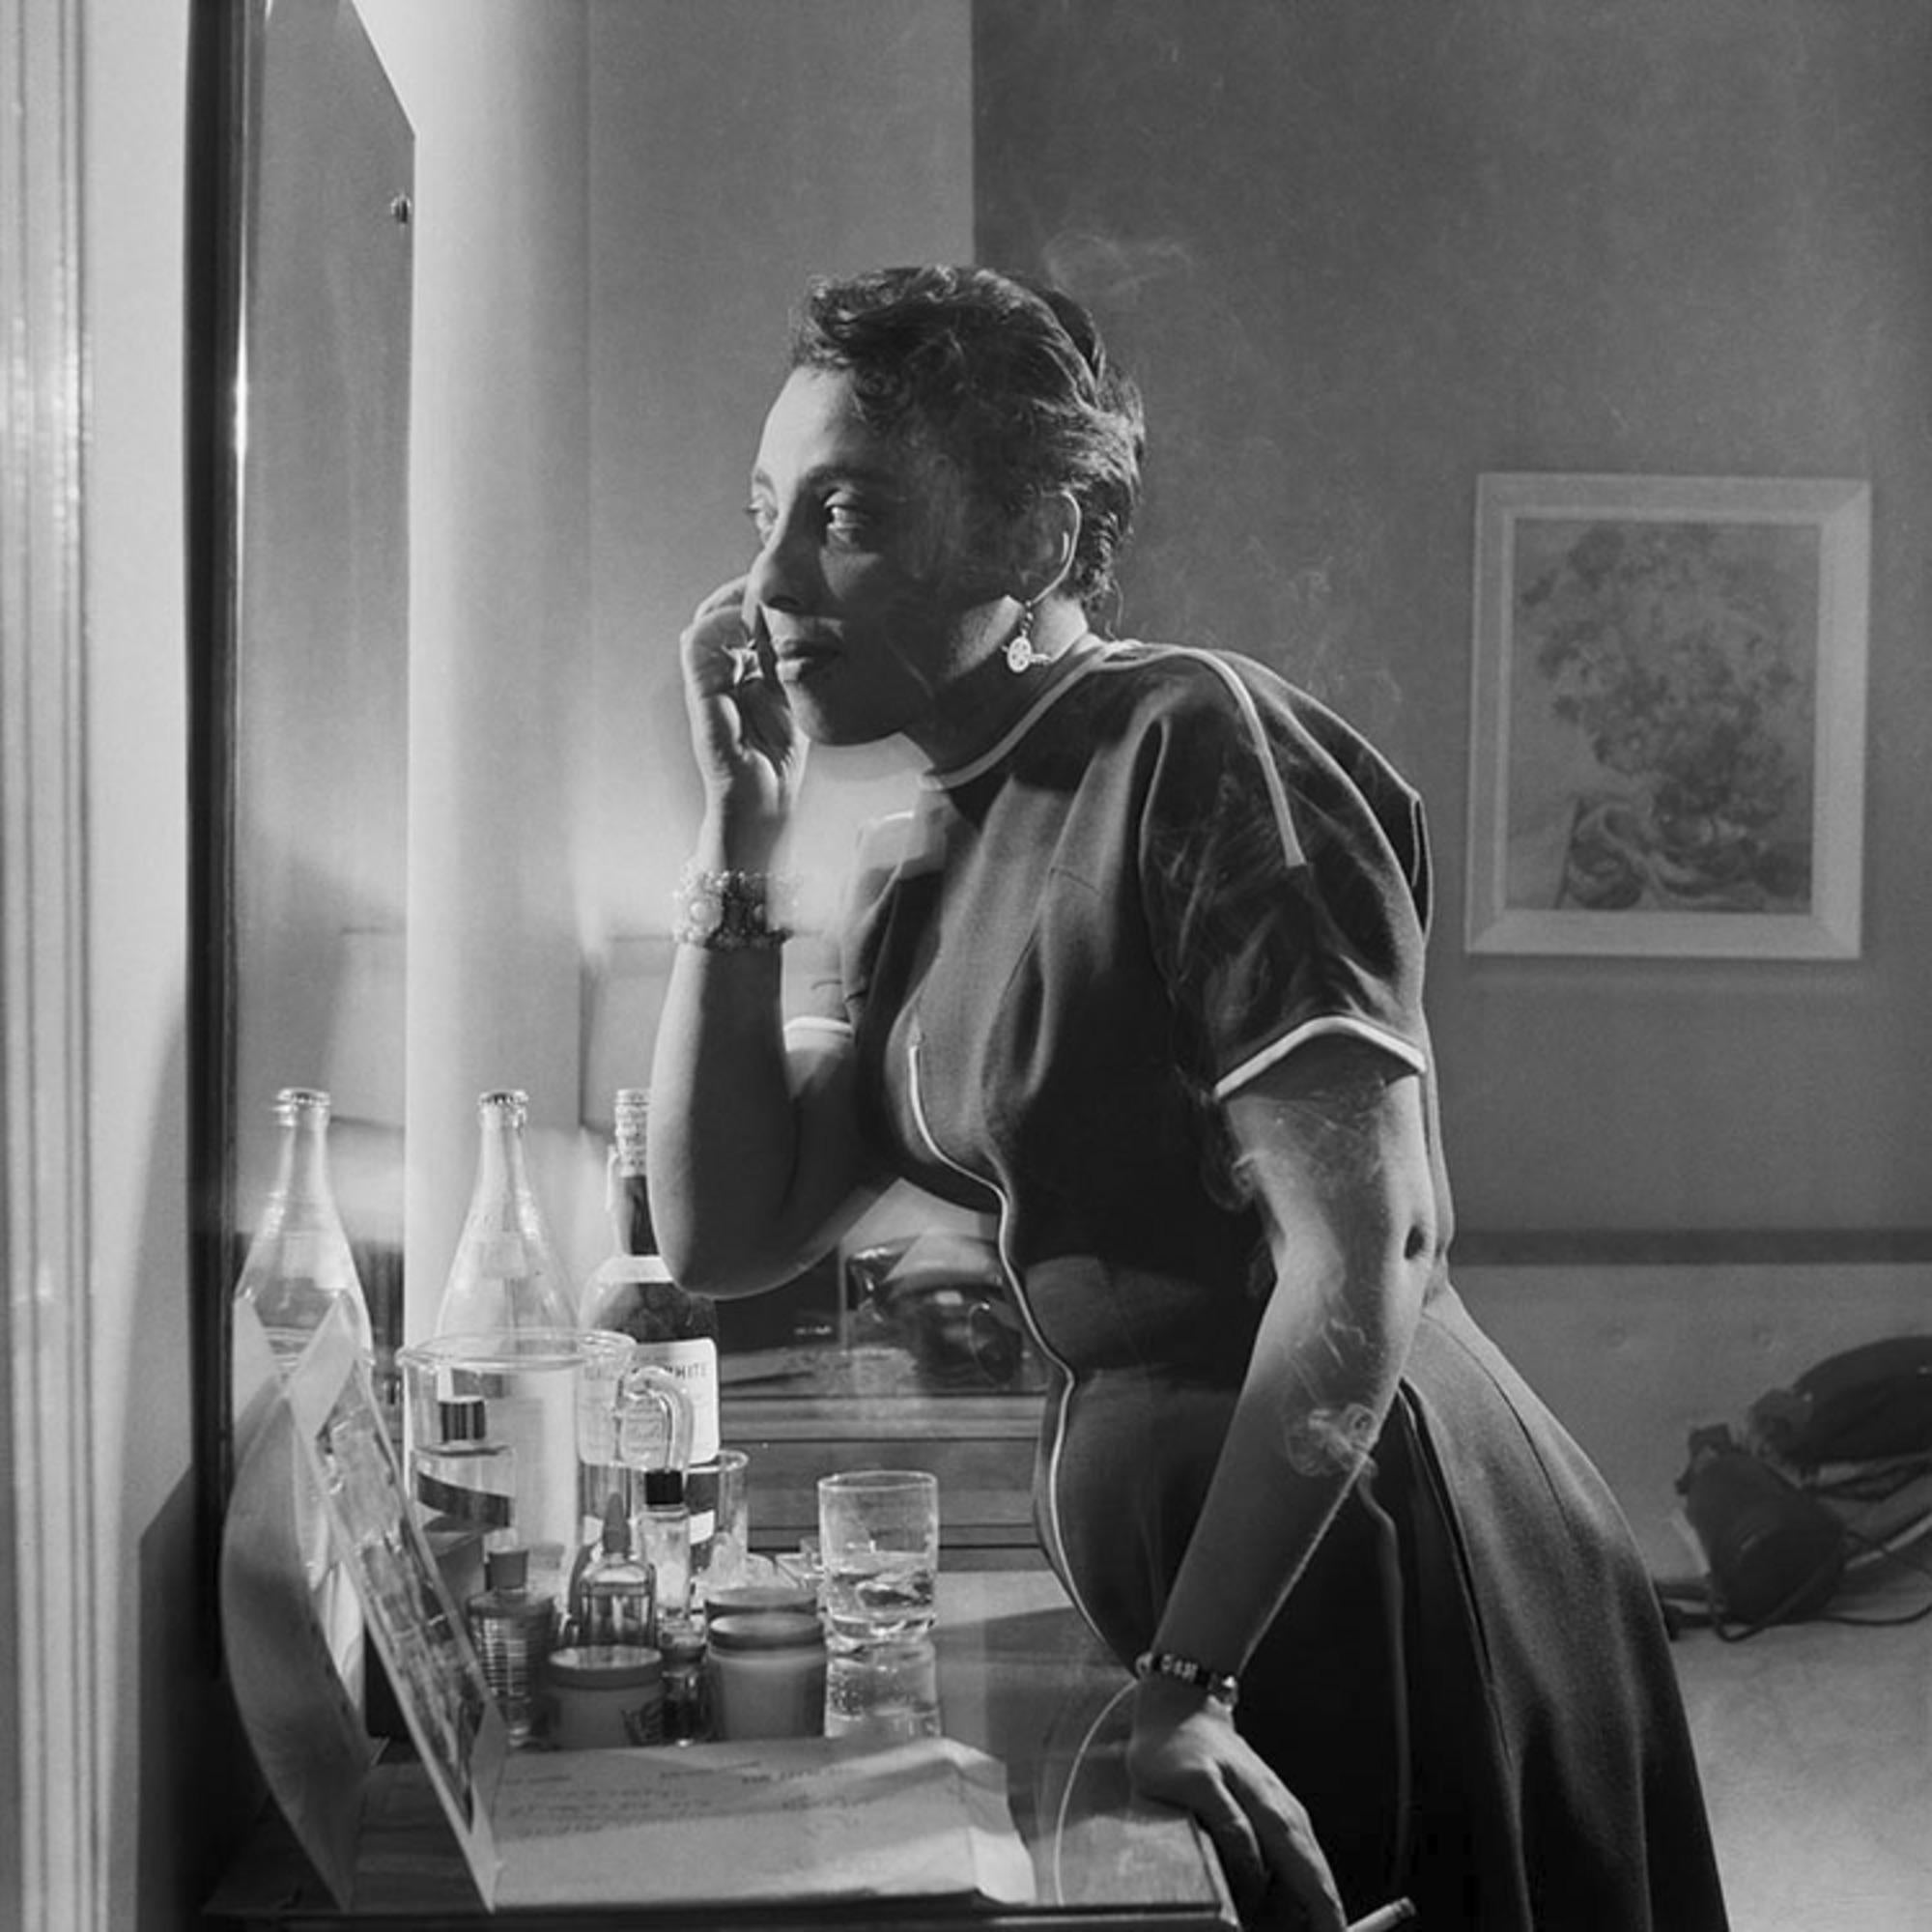 Impression argentique à la gélatine, estampillée par la succession

La chanteuse de jazz américaine Carmen McRae fumant et se maquillant dans sa chambre d'hôtel à Chicago, 1956.

Tailles disponibles : 
16 "x20" Edition de 25
20 "x24" Edition de